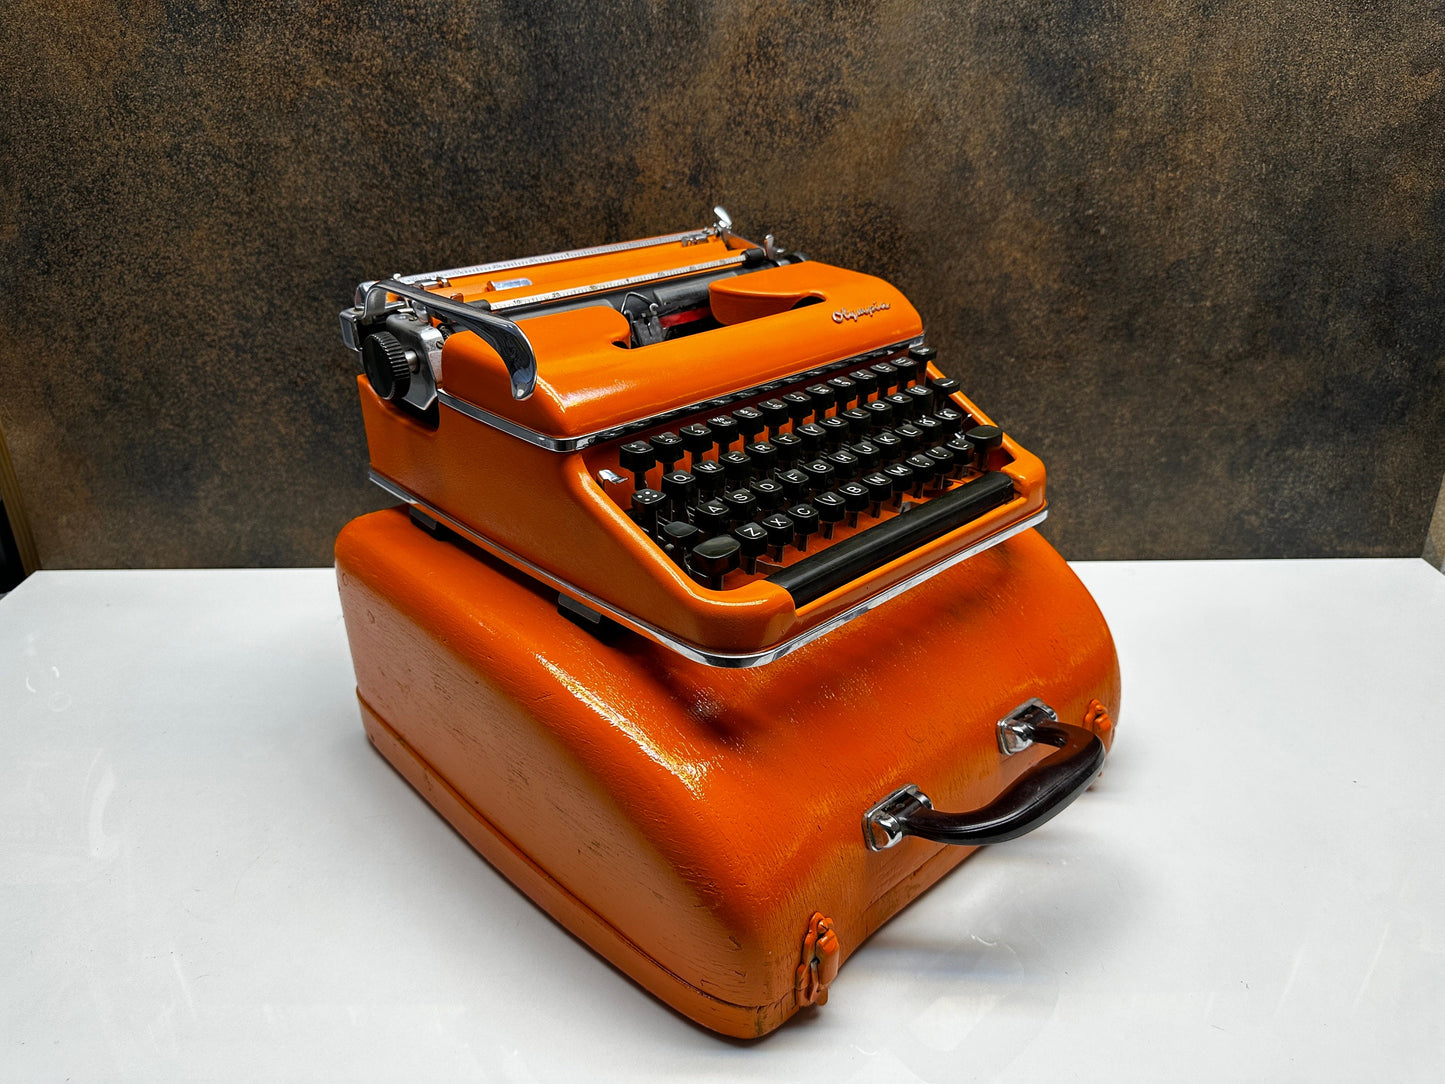 Olympia SM3  Typewriter +  Bag - Premium Gift / Typewriter World / The Most Special Gift/ Orange Typewriter